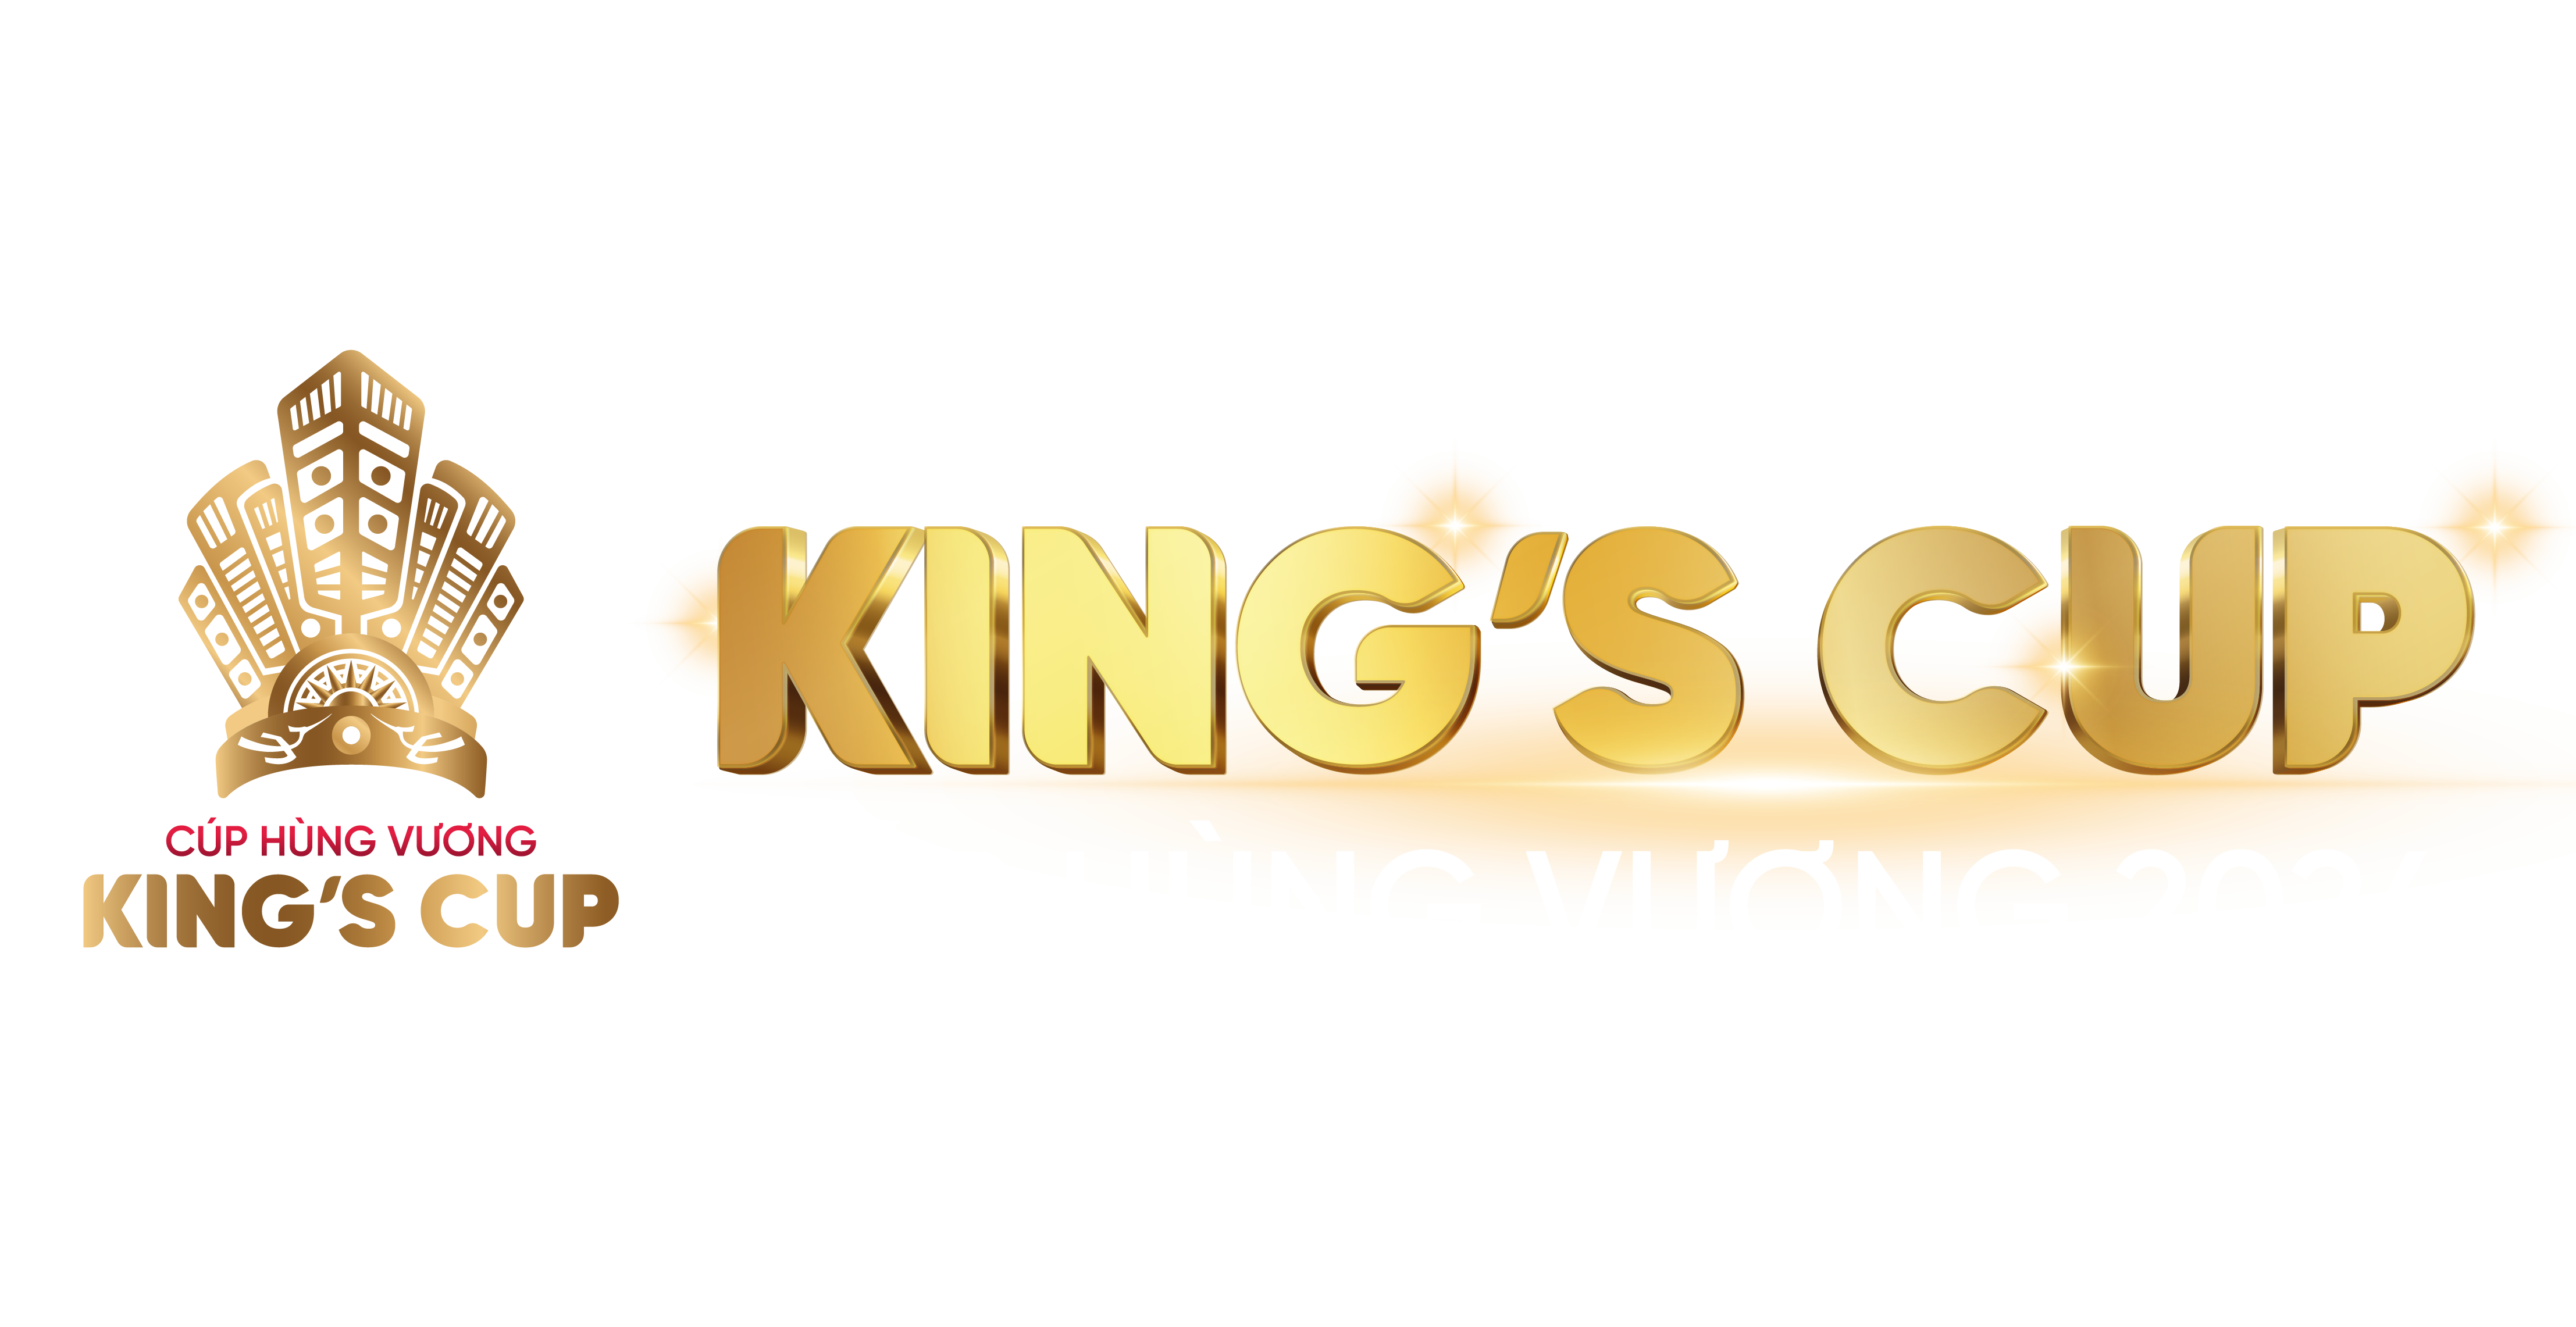 wGroup tổ chức giải Đối kháng King's Cup với tổng tiền thưởng 1,5 tỷ đồng